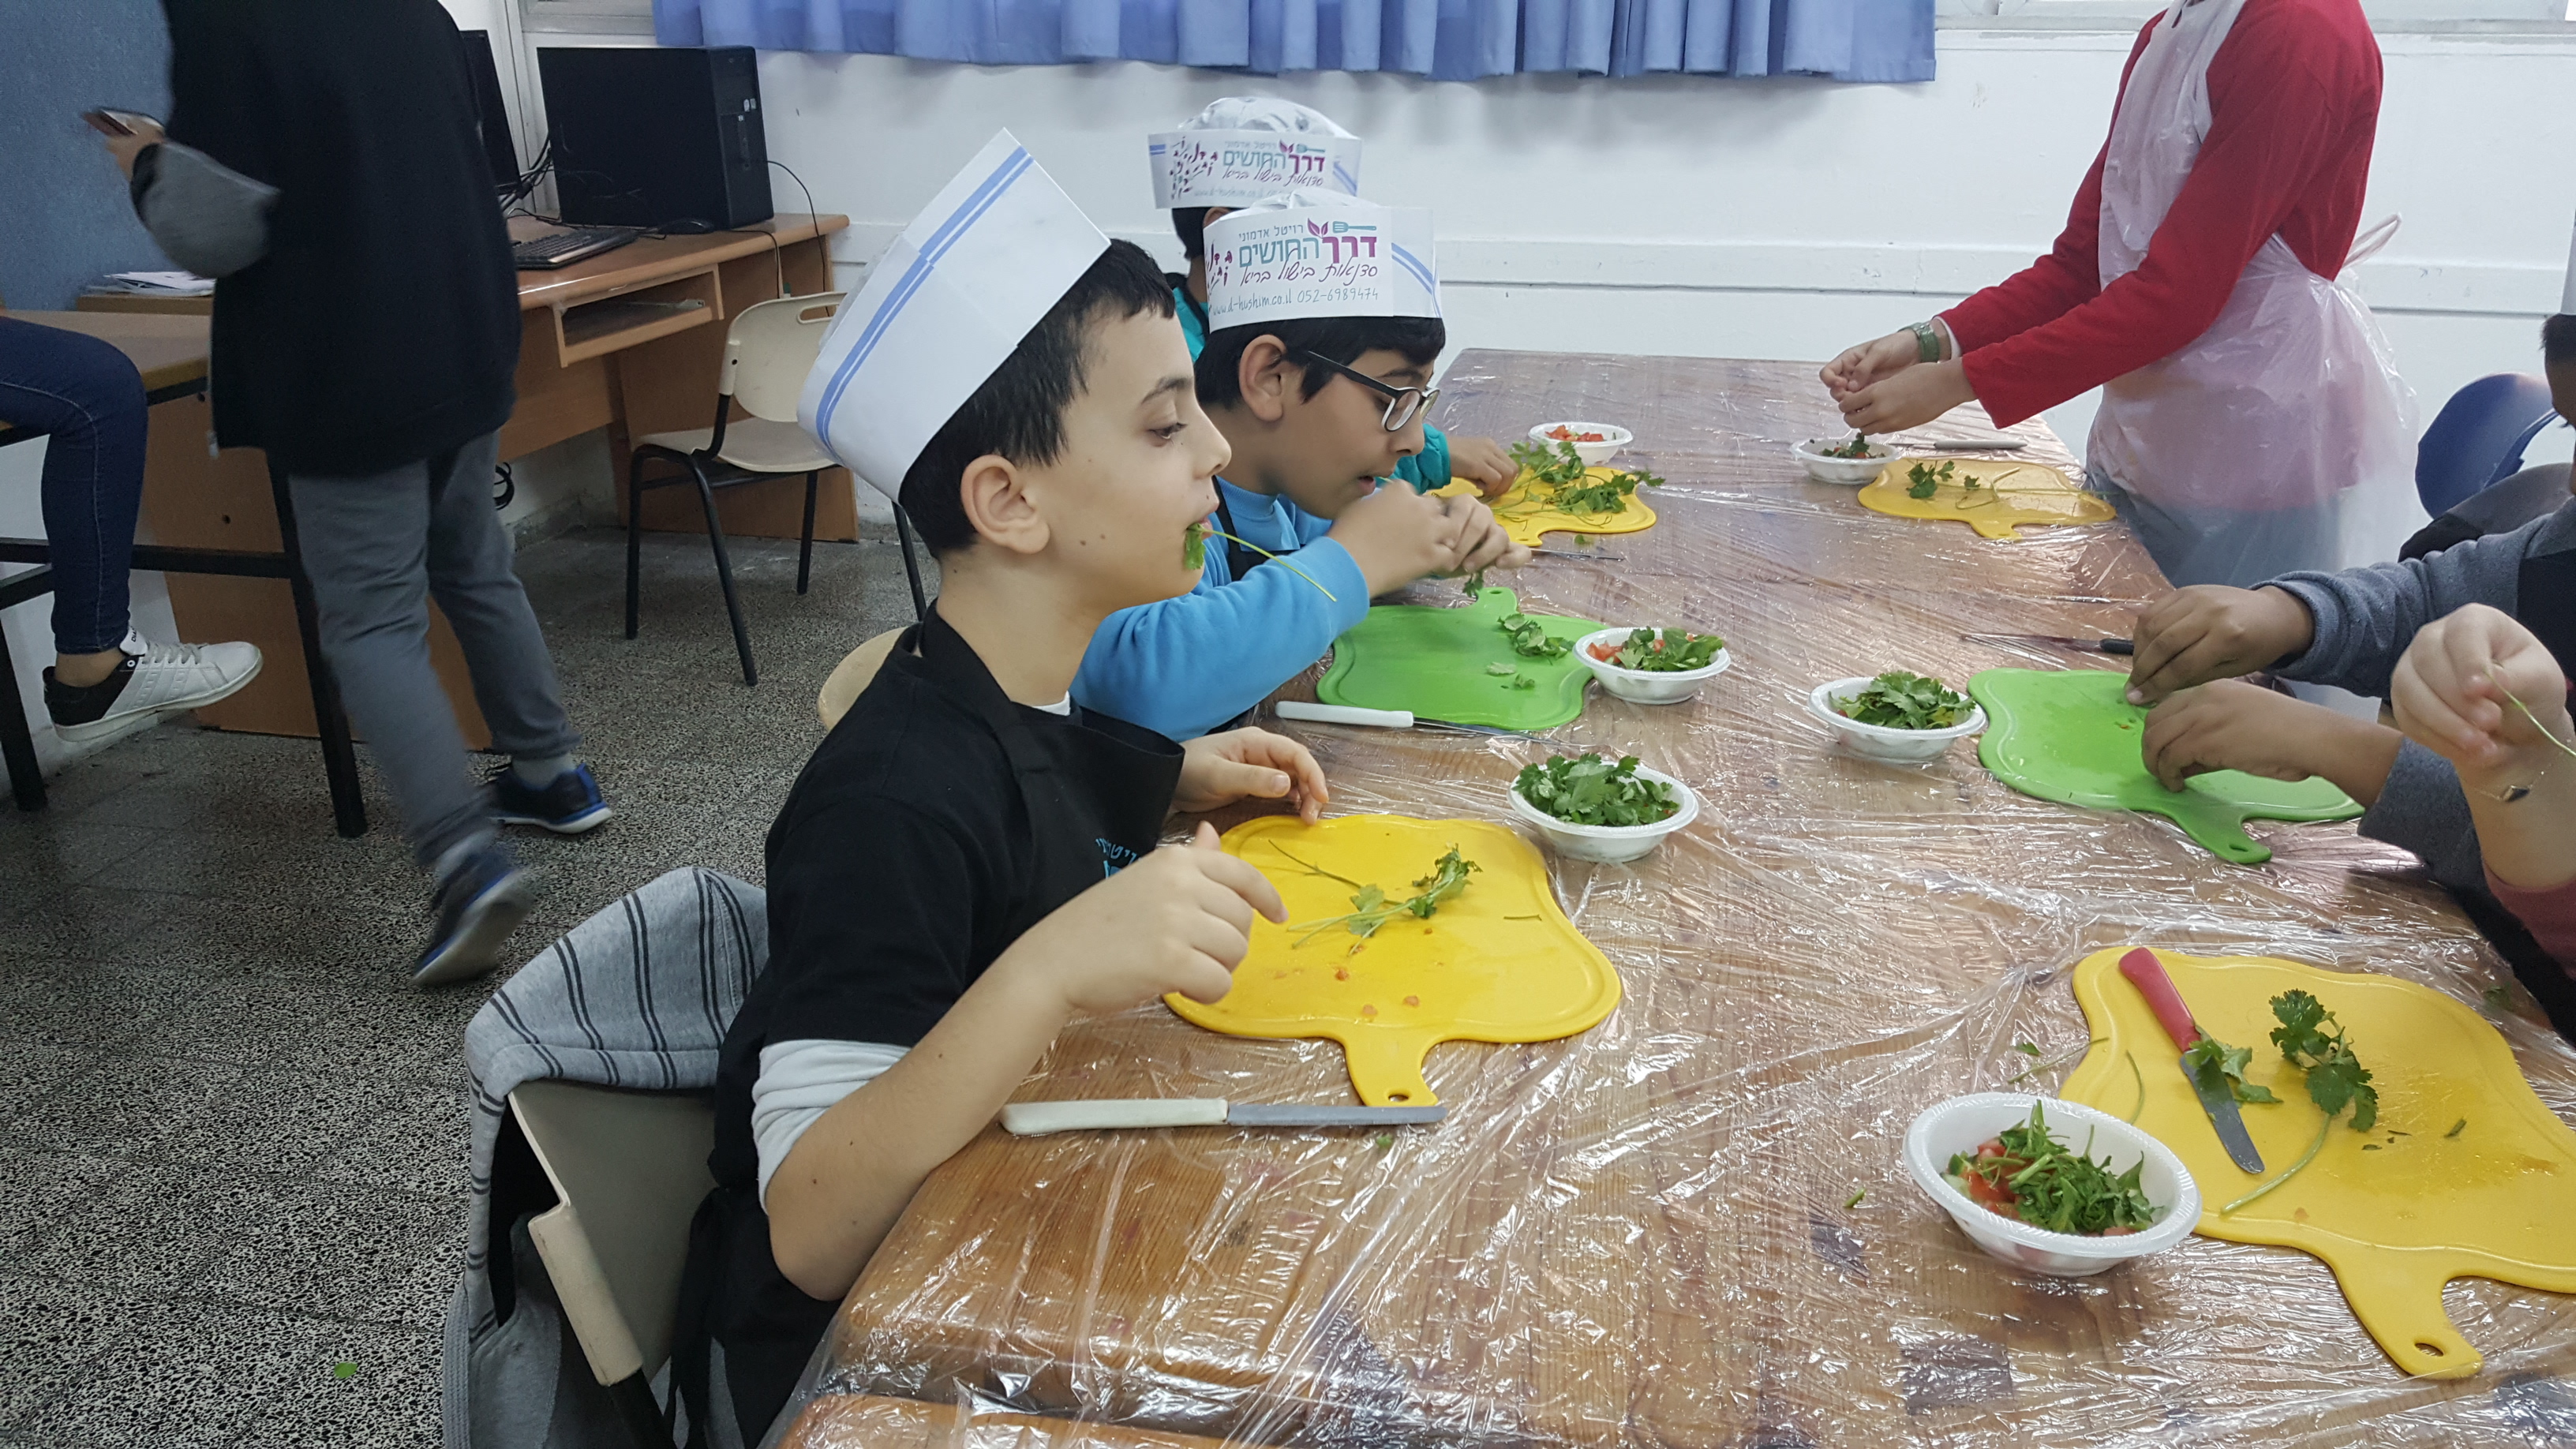  שבוע החינוך מגמת גסטרונומייה בית ספר הלל, רמת גן, 2016